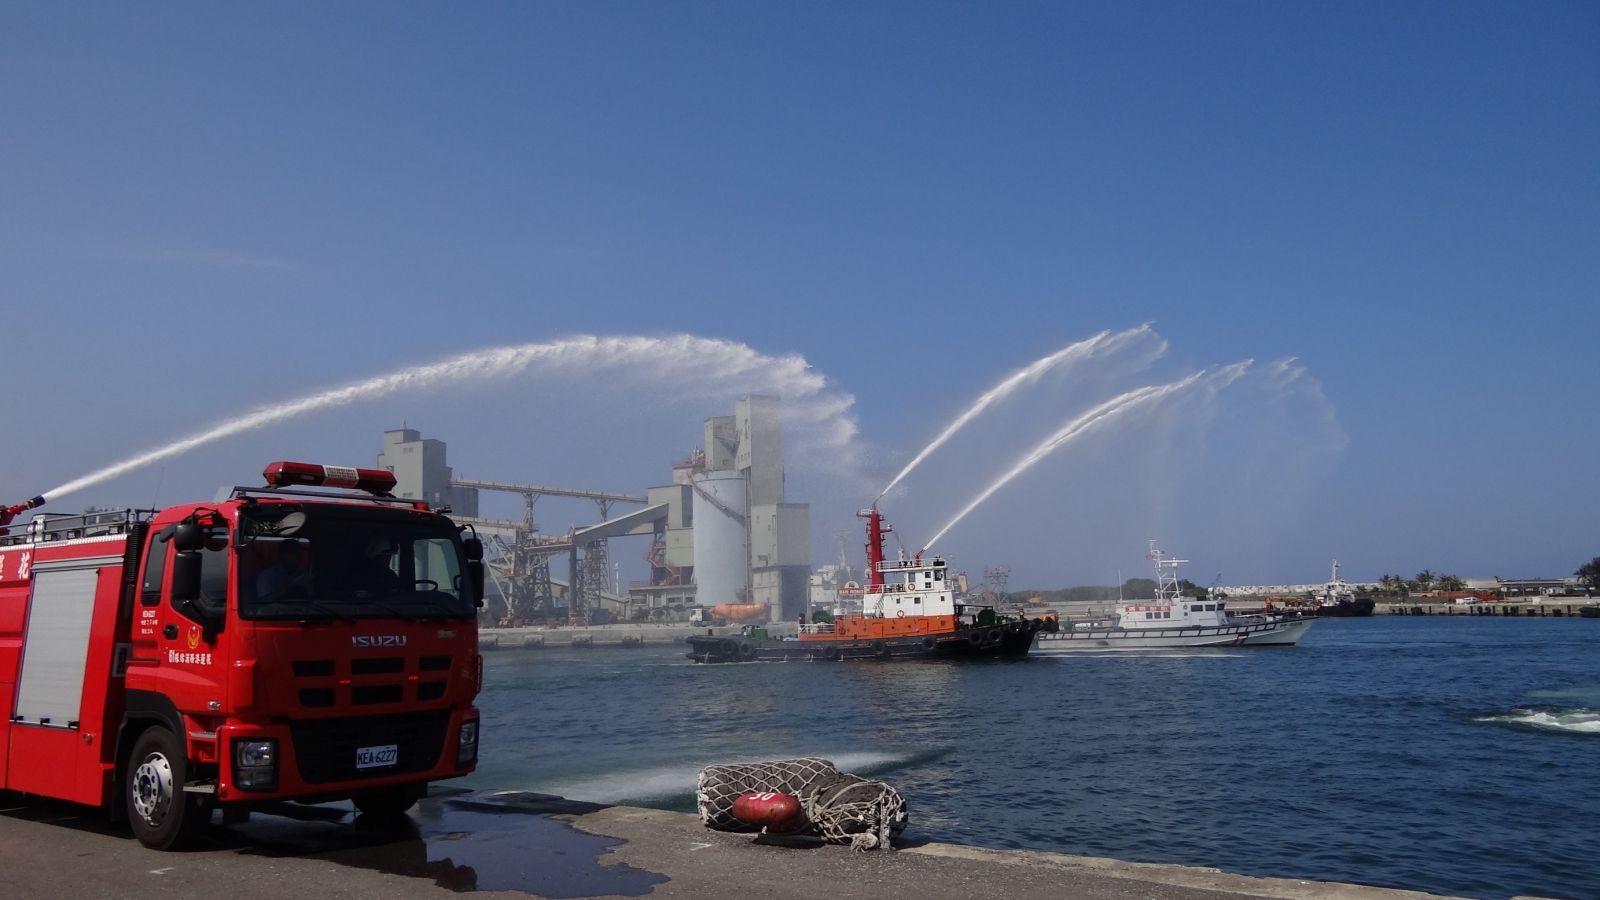 航港局與海洋委員會共同舉辦聯合救難演練 提升港區緊急應變能力 | 文章內置圖片